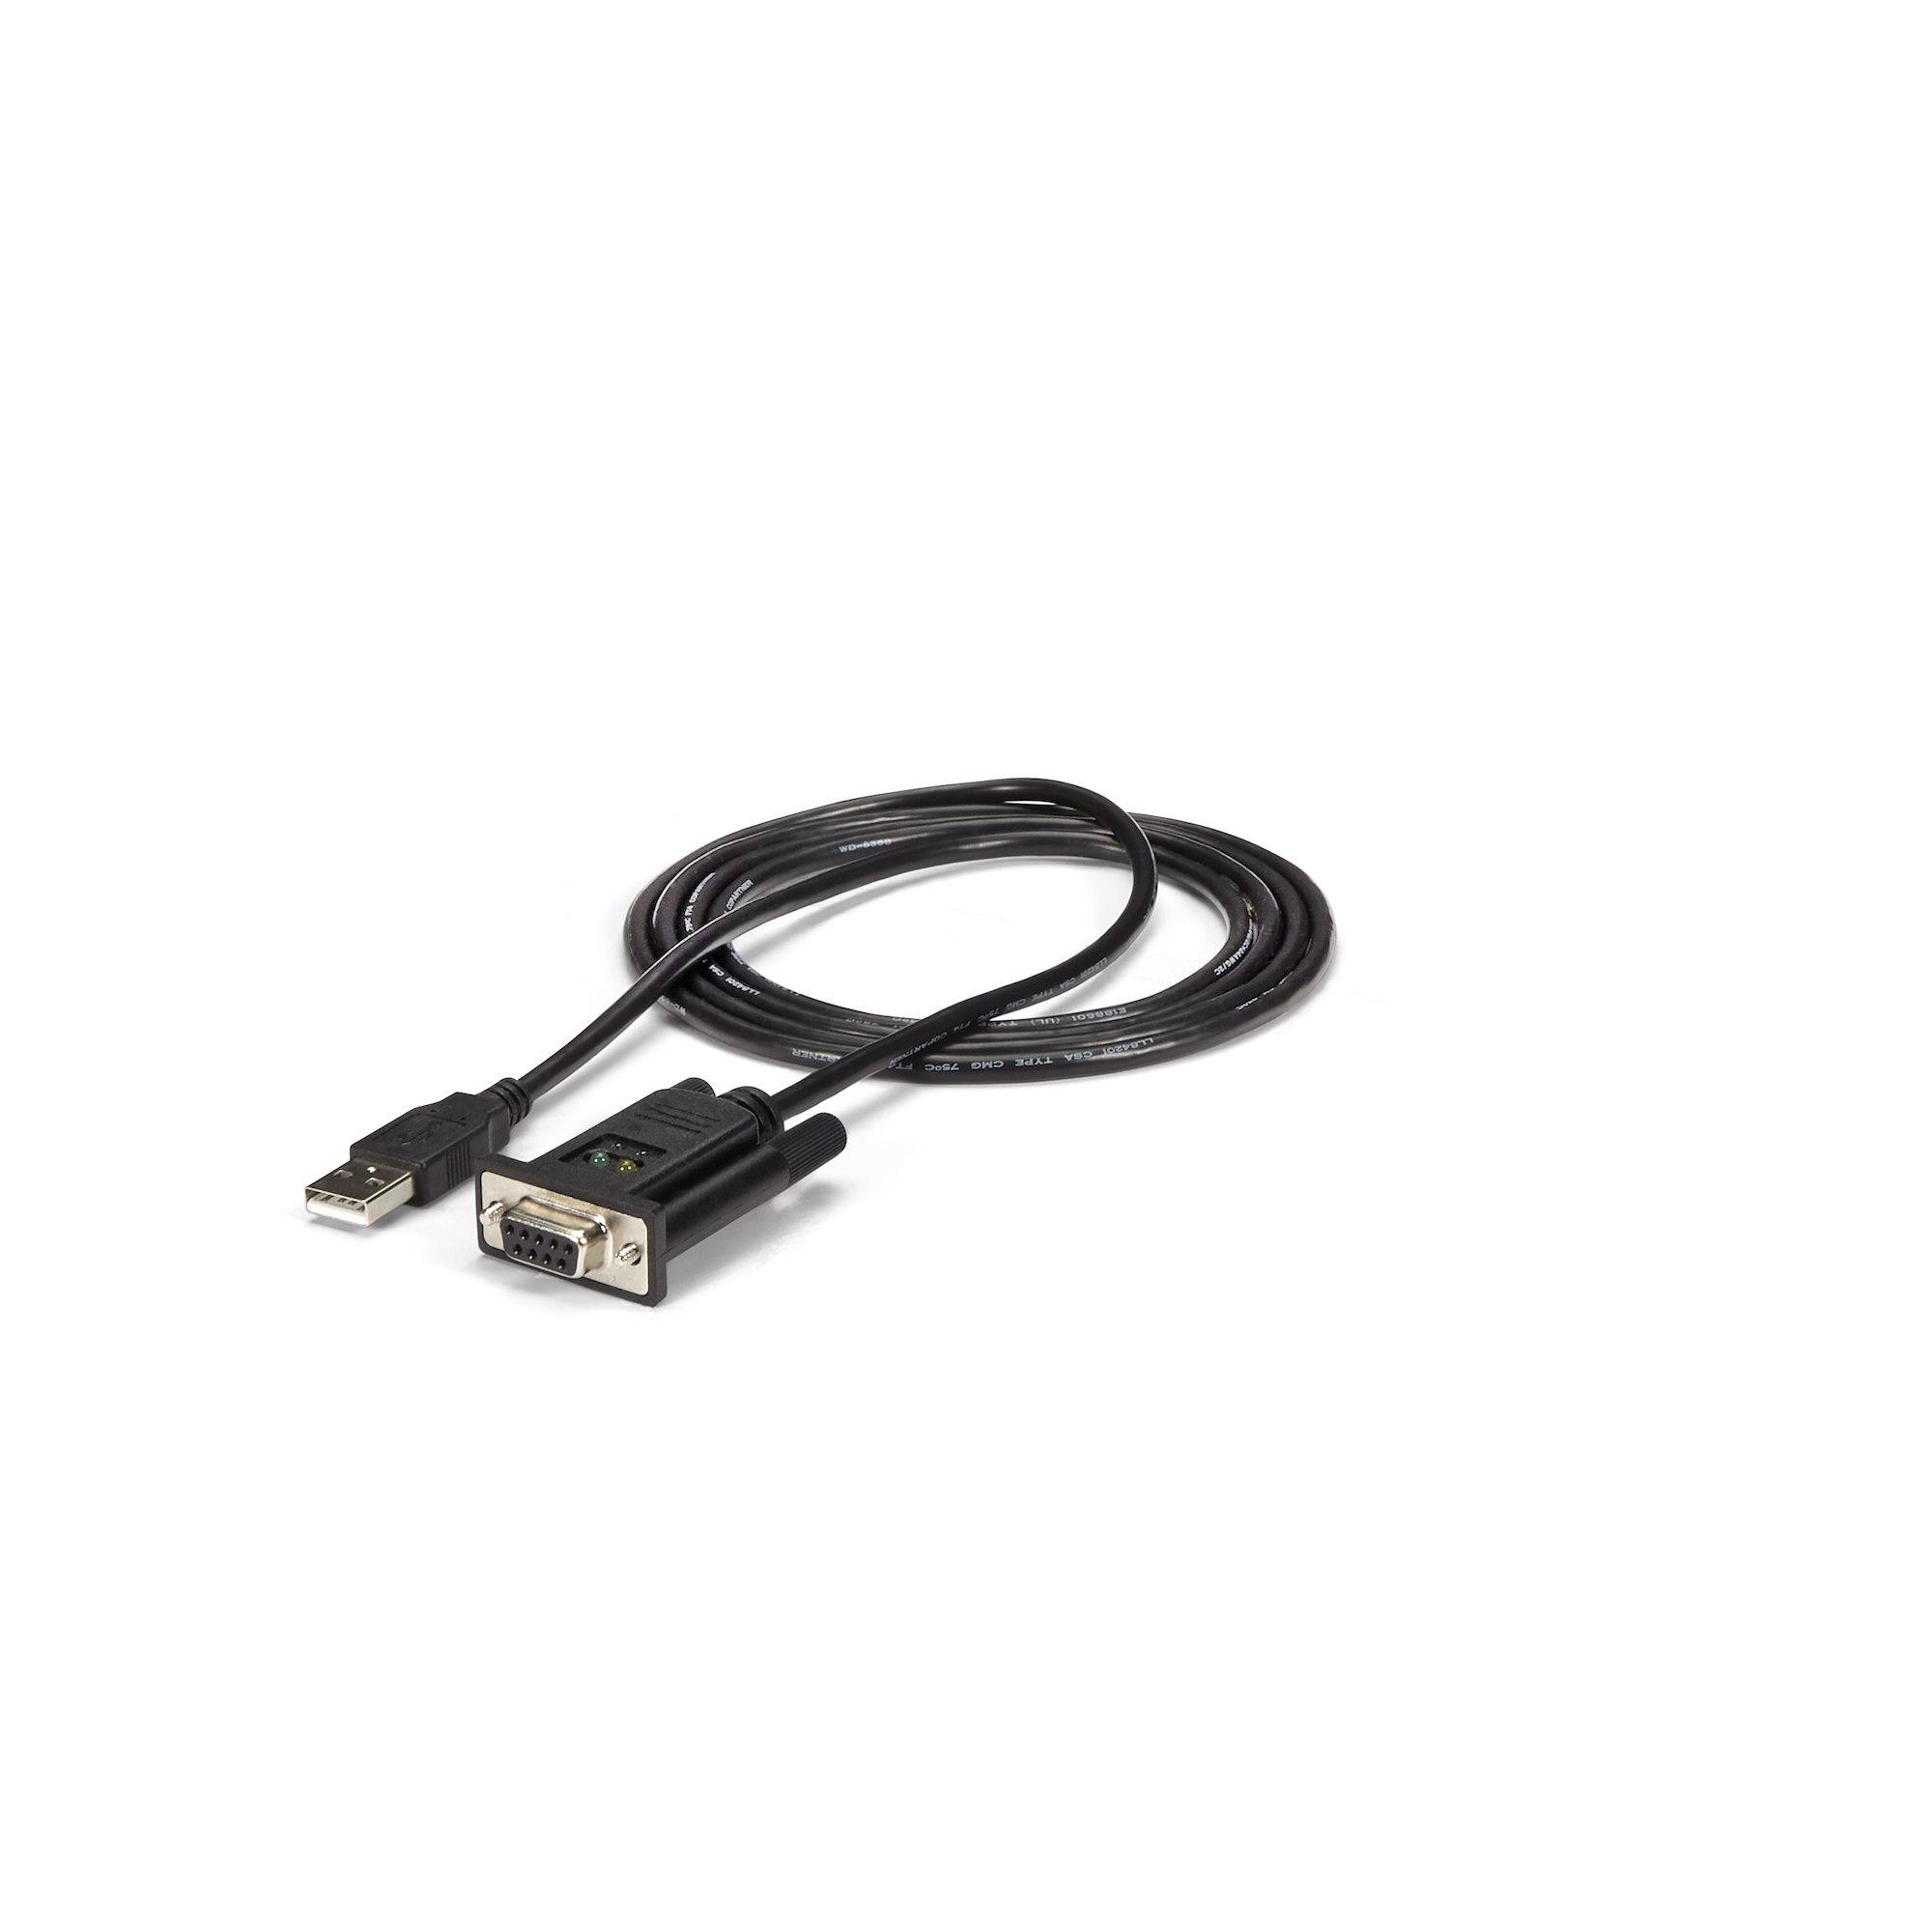 Rca Informatique - Image du produit : ADAPTATEUR FTDI USB 1PORT VERS NULL MODEM RS232